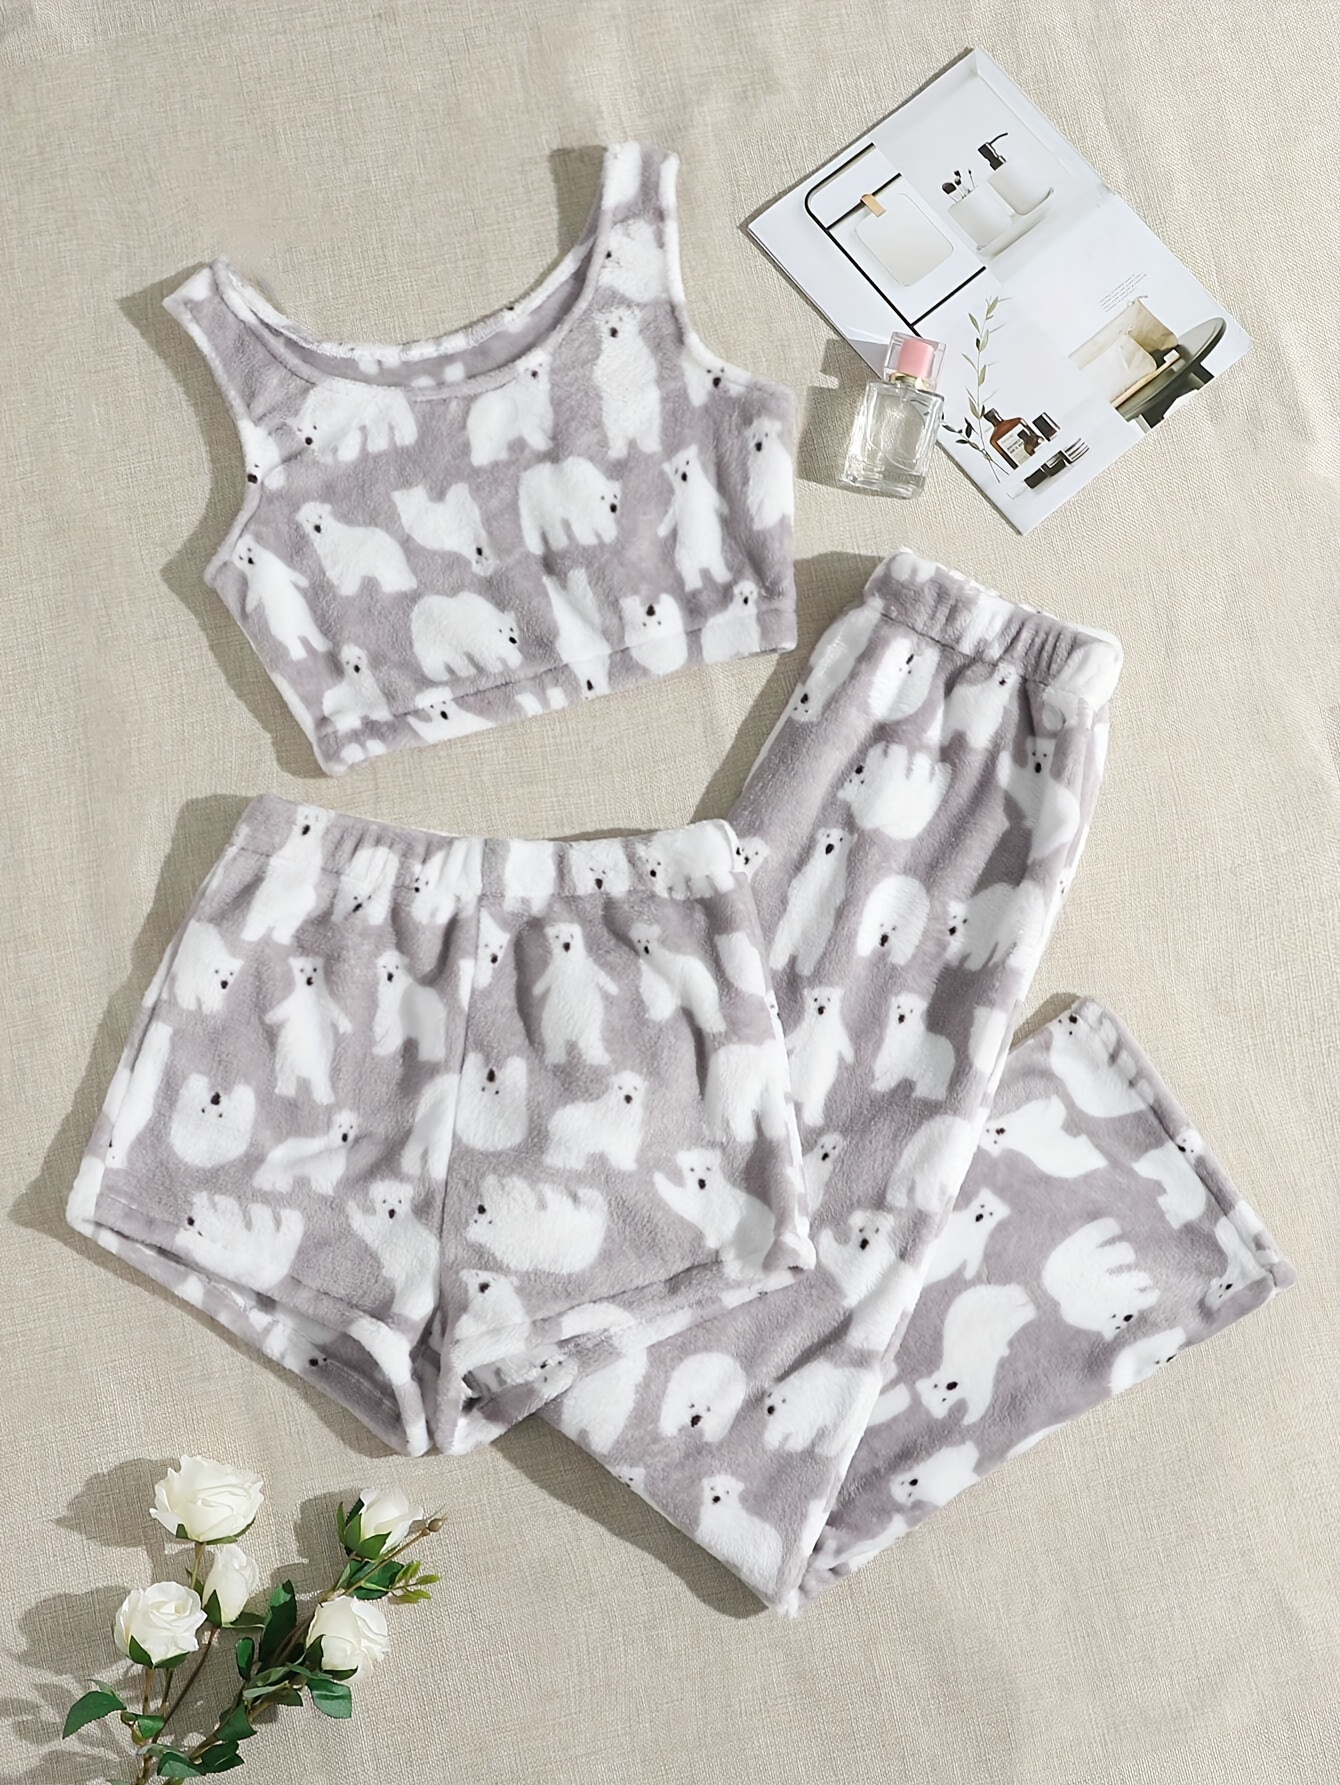 Cute & Comfy Plant Print Pajamas, Sleeveless Pajama Top & Pajama Shorts  Set, Women's Loungewear & Sleepwear